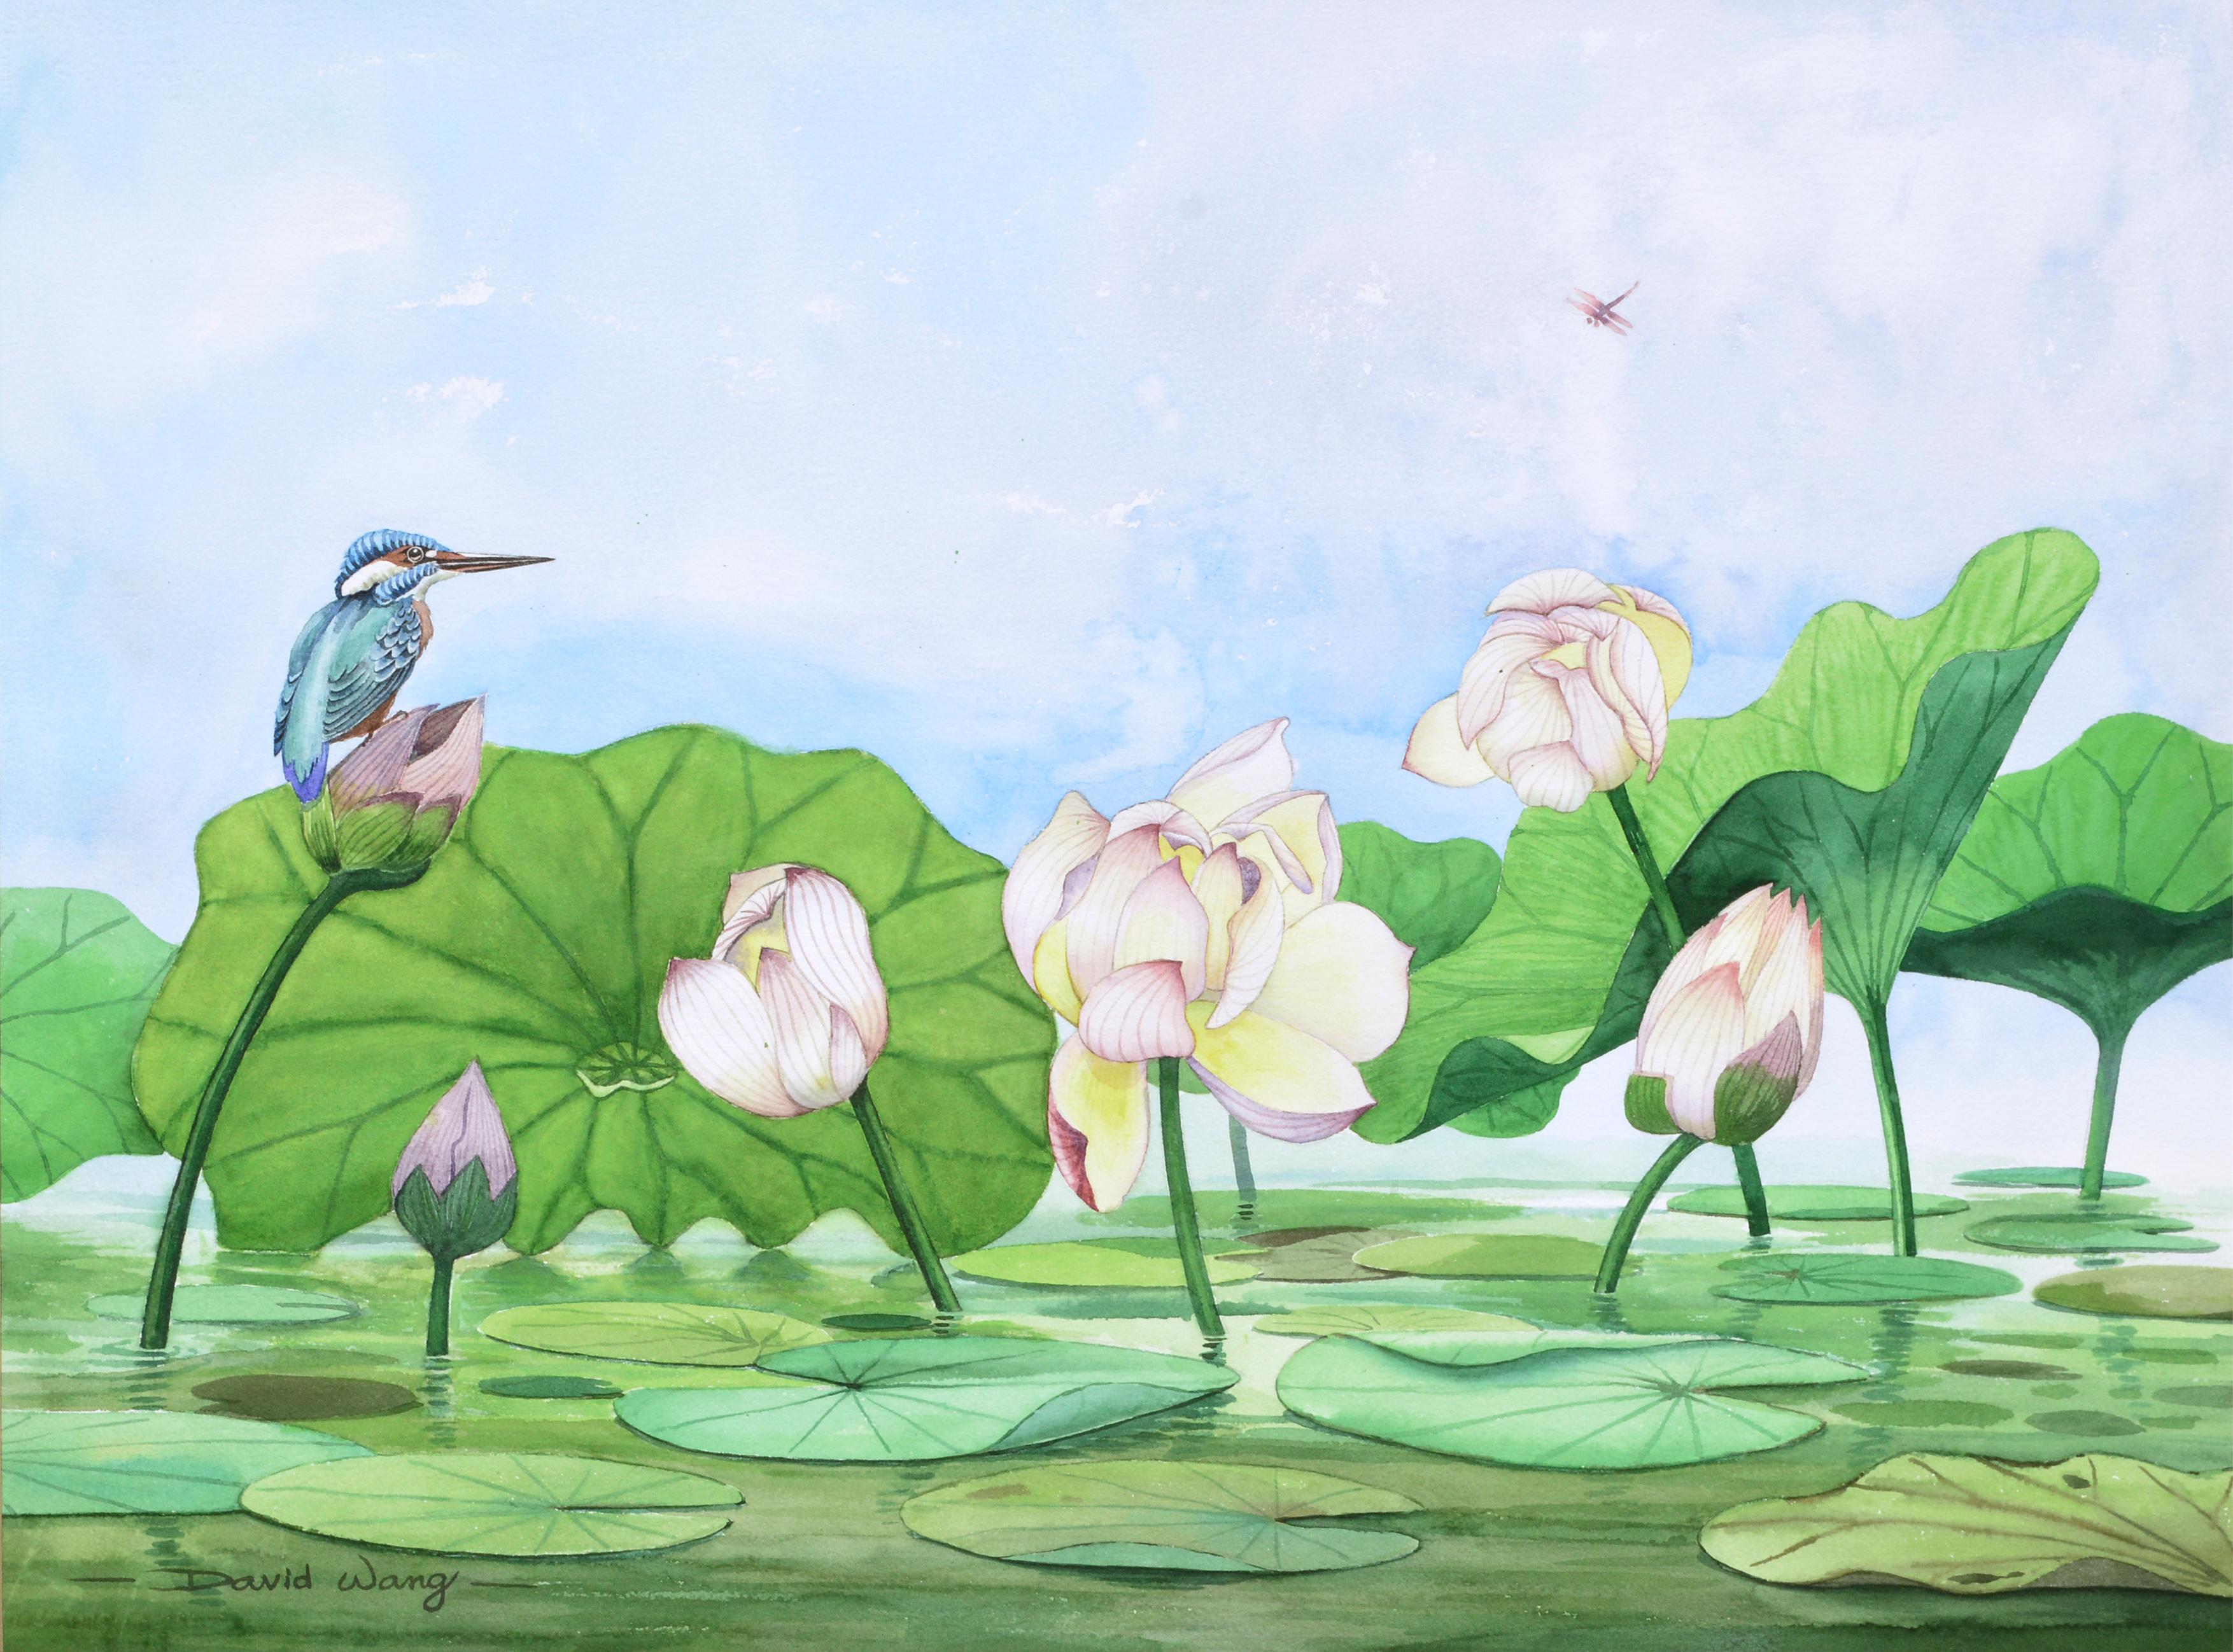 Lilien mit Vogelperlen auf Wasser – Art von David Wang